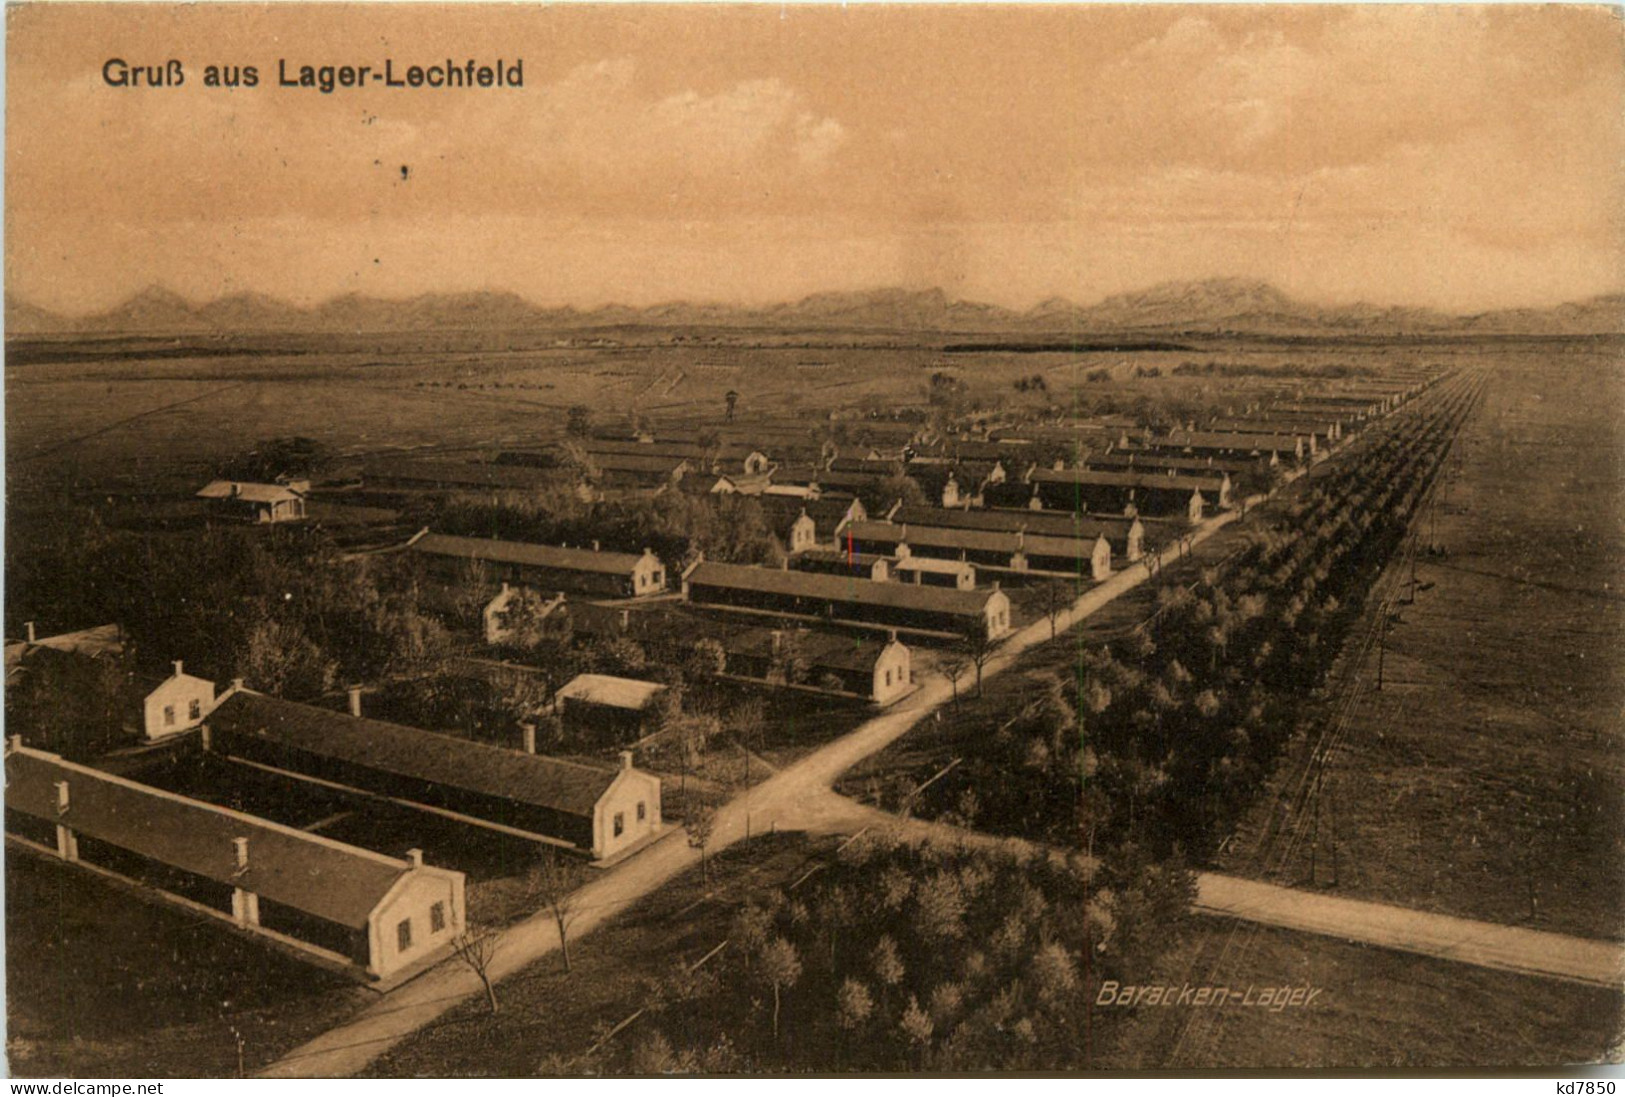 Lager-Lechfeld, Grüsse, - Augsburg